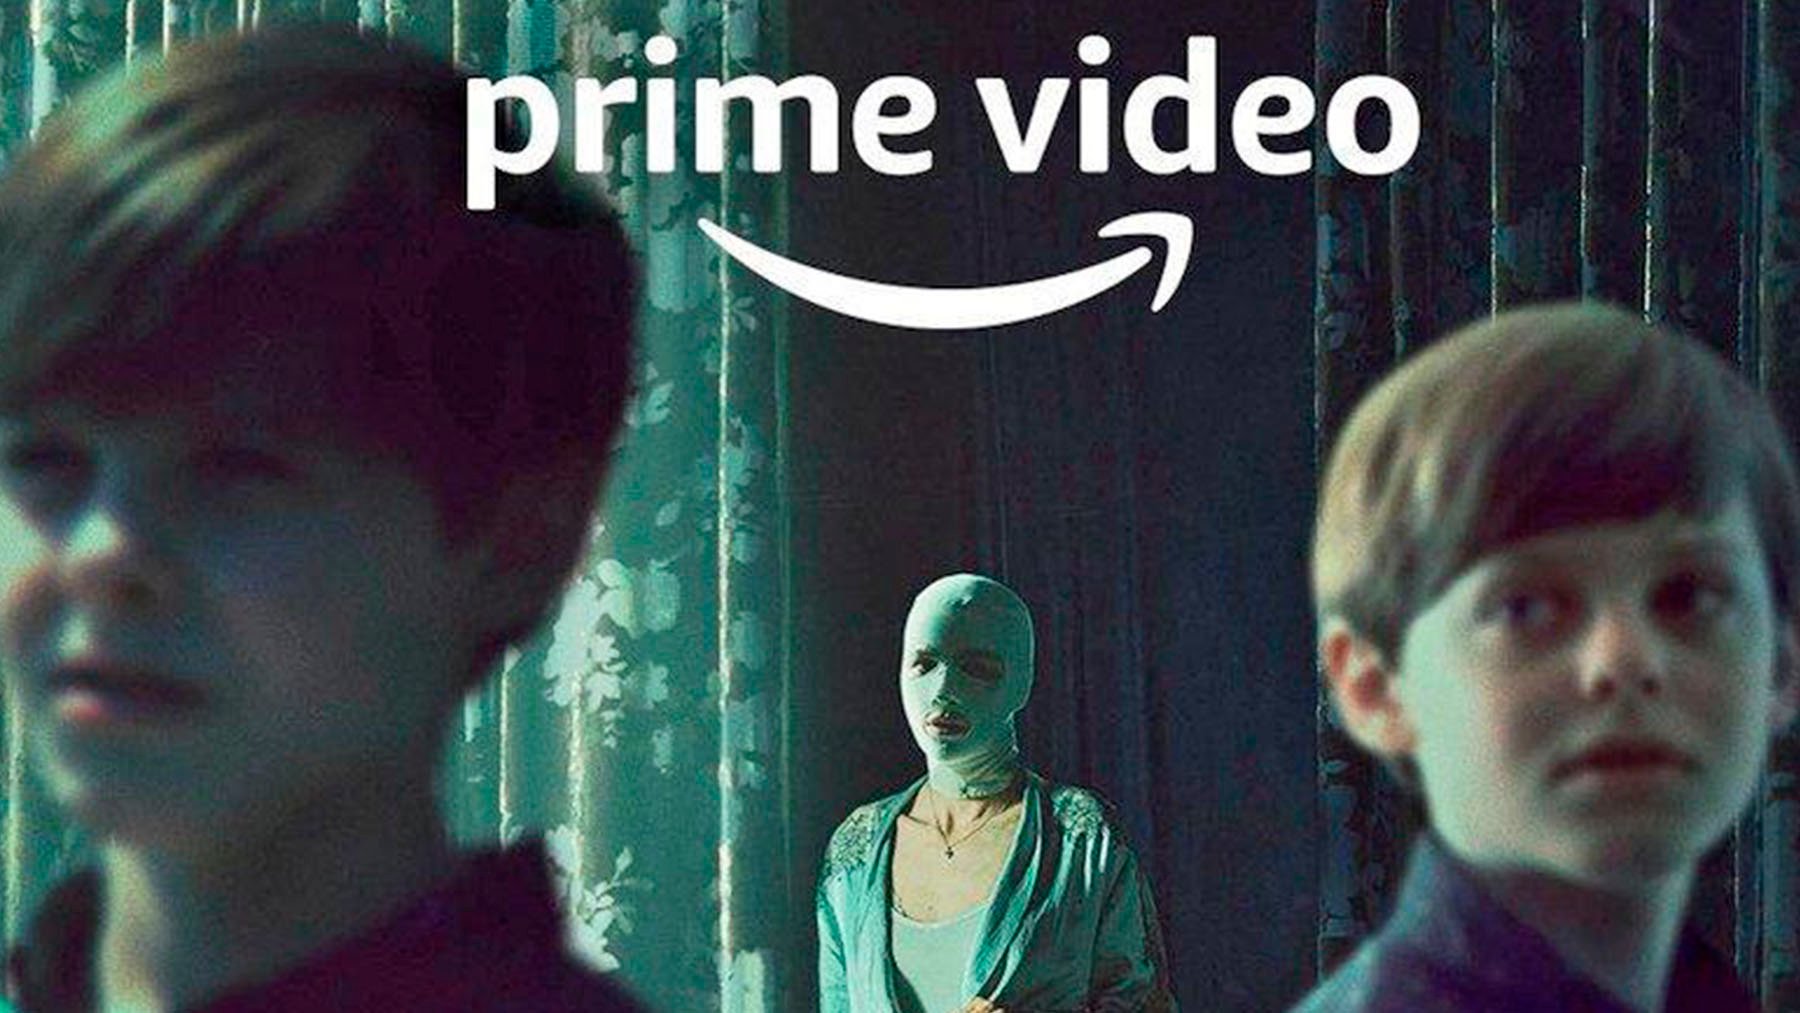 El thriller más escalofriante de Amazon Video que no te dejará dormir